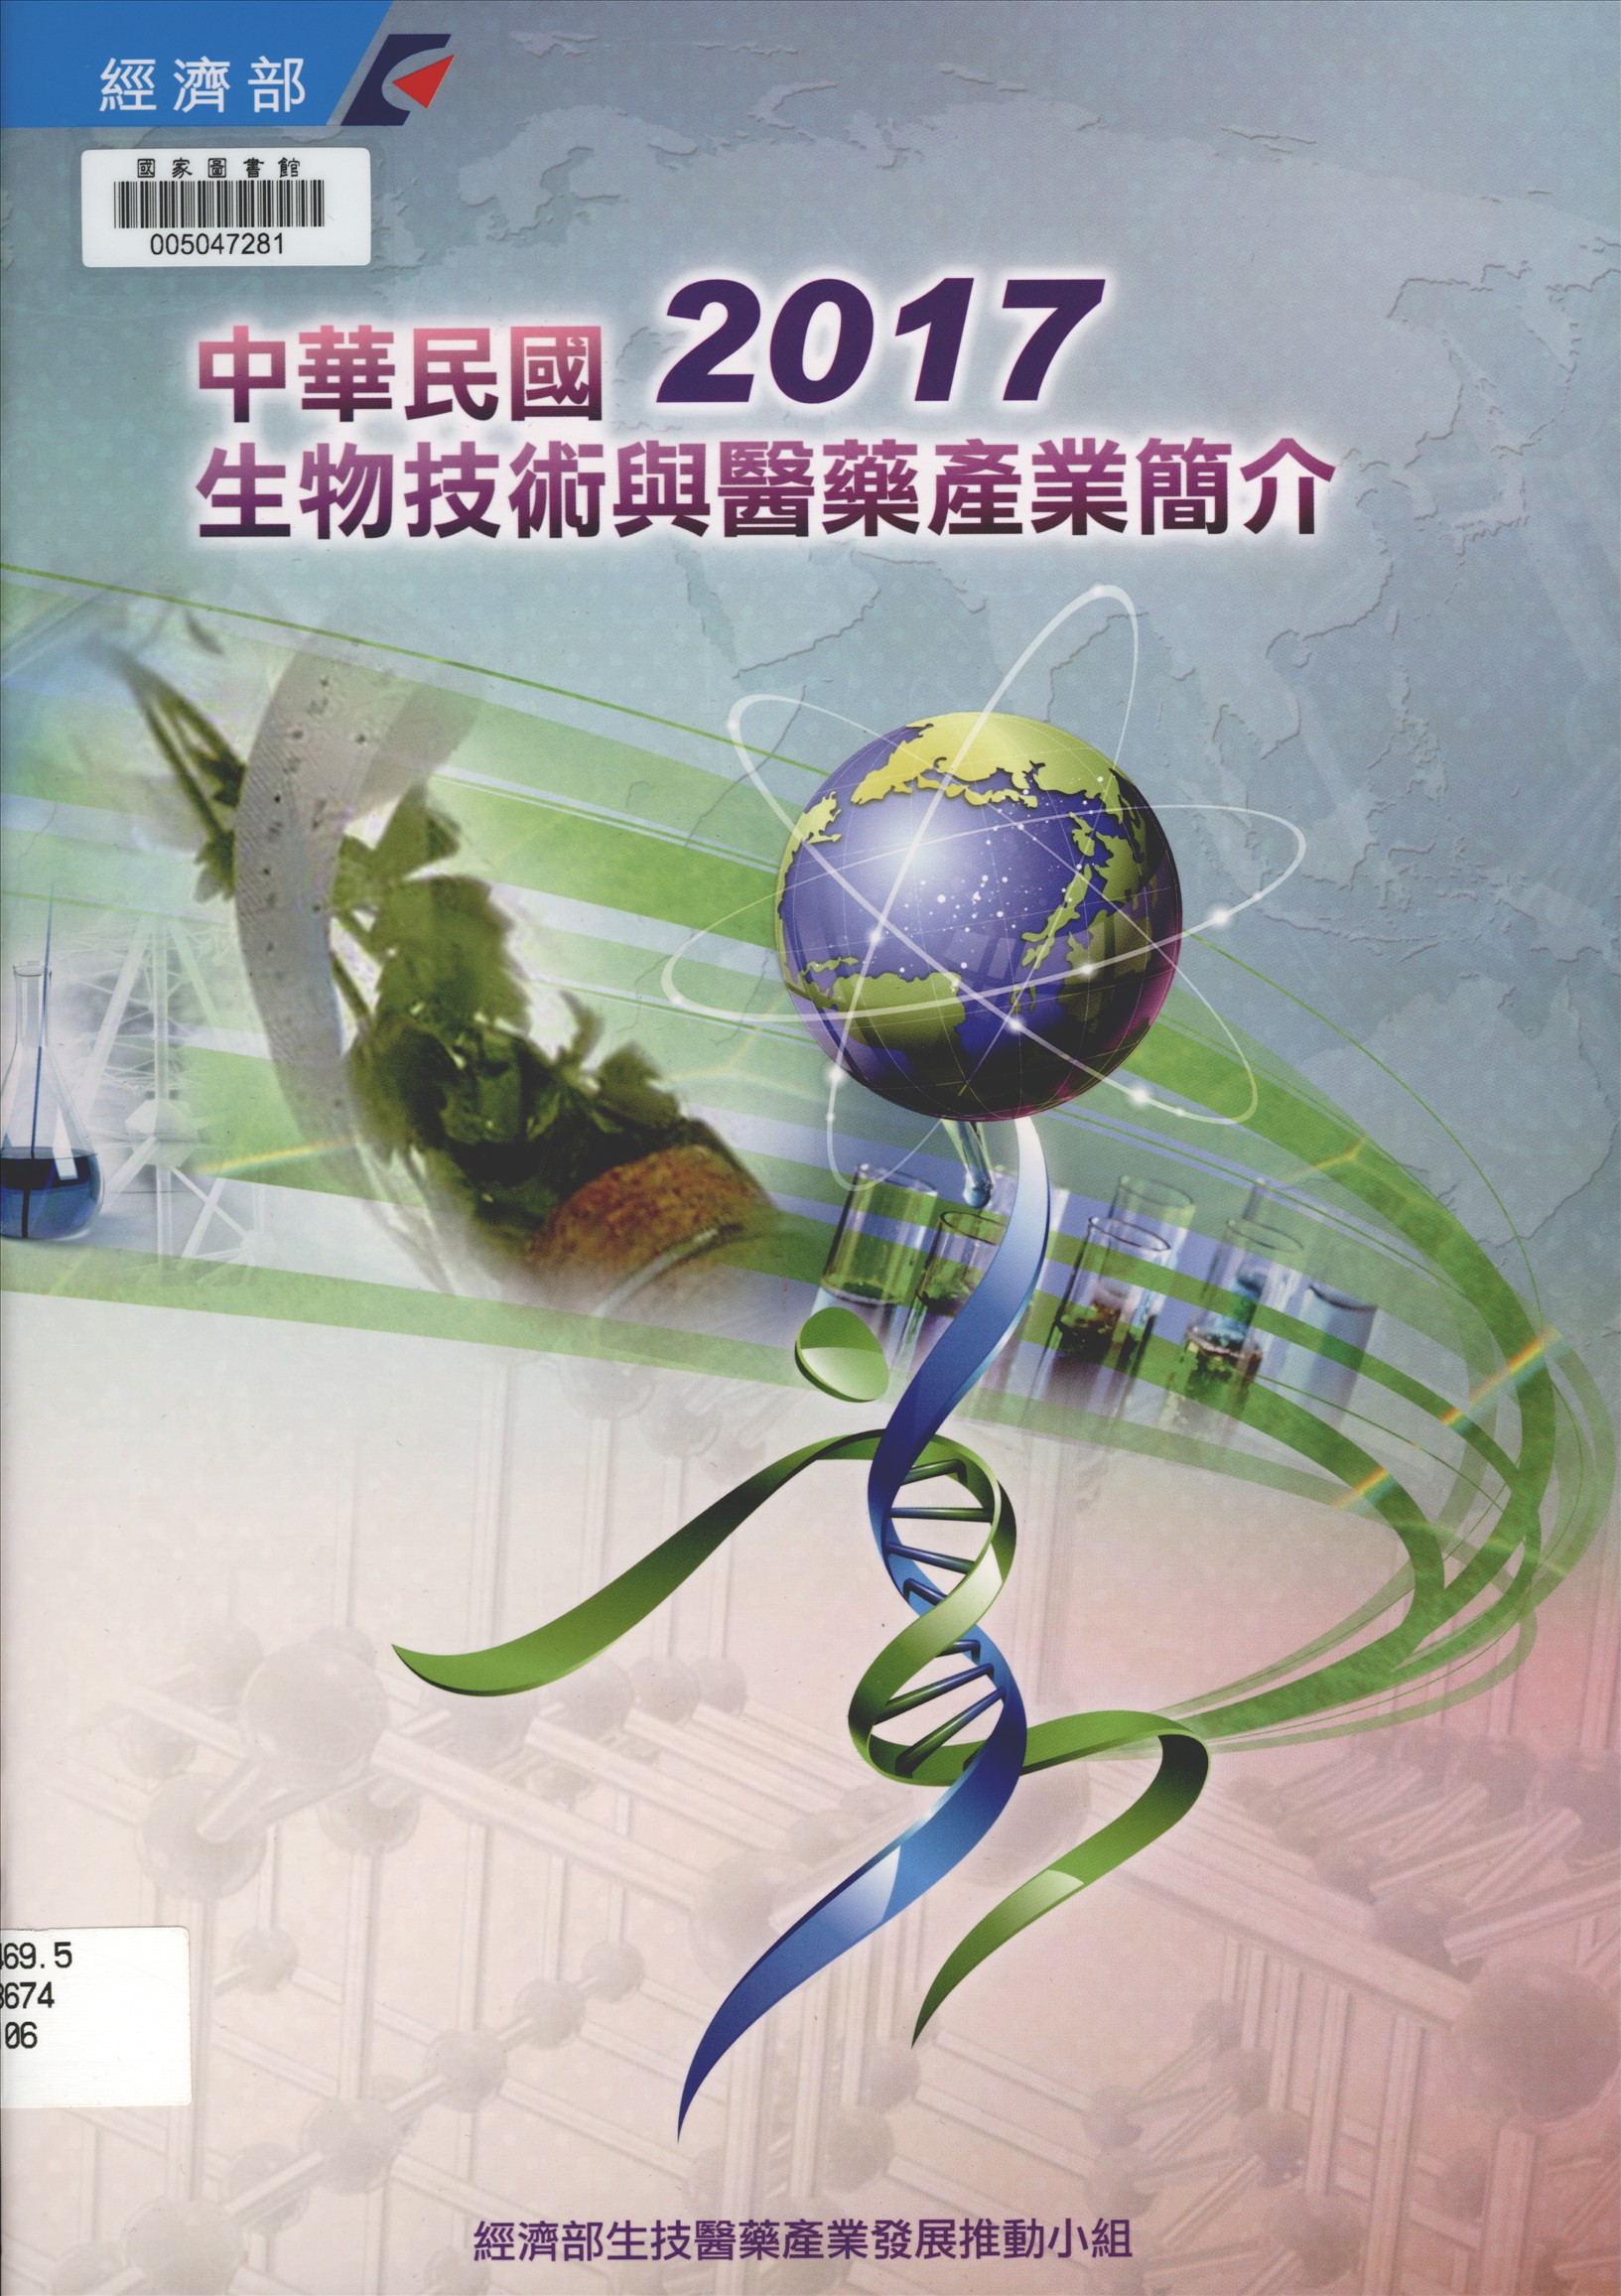 中華民國生物技術與醫藥產業簡介